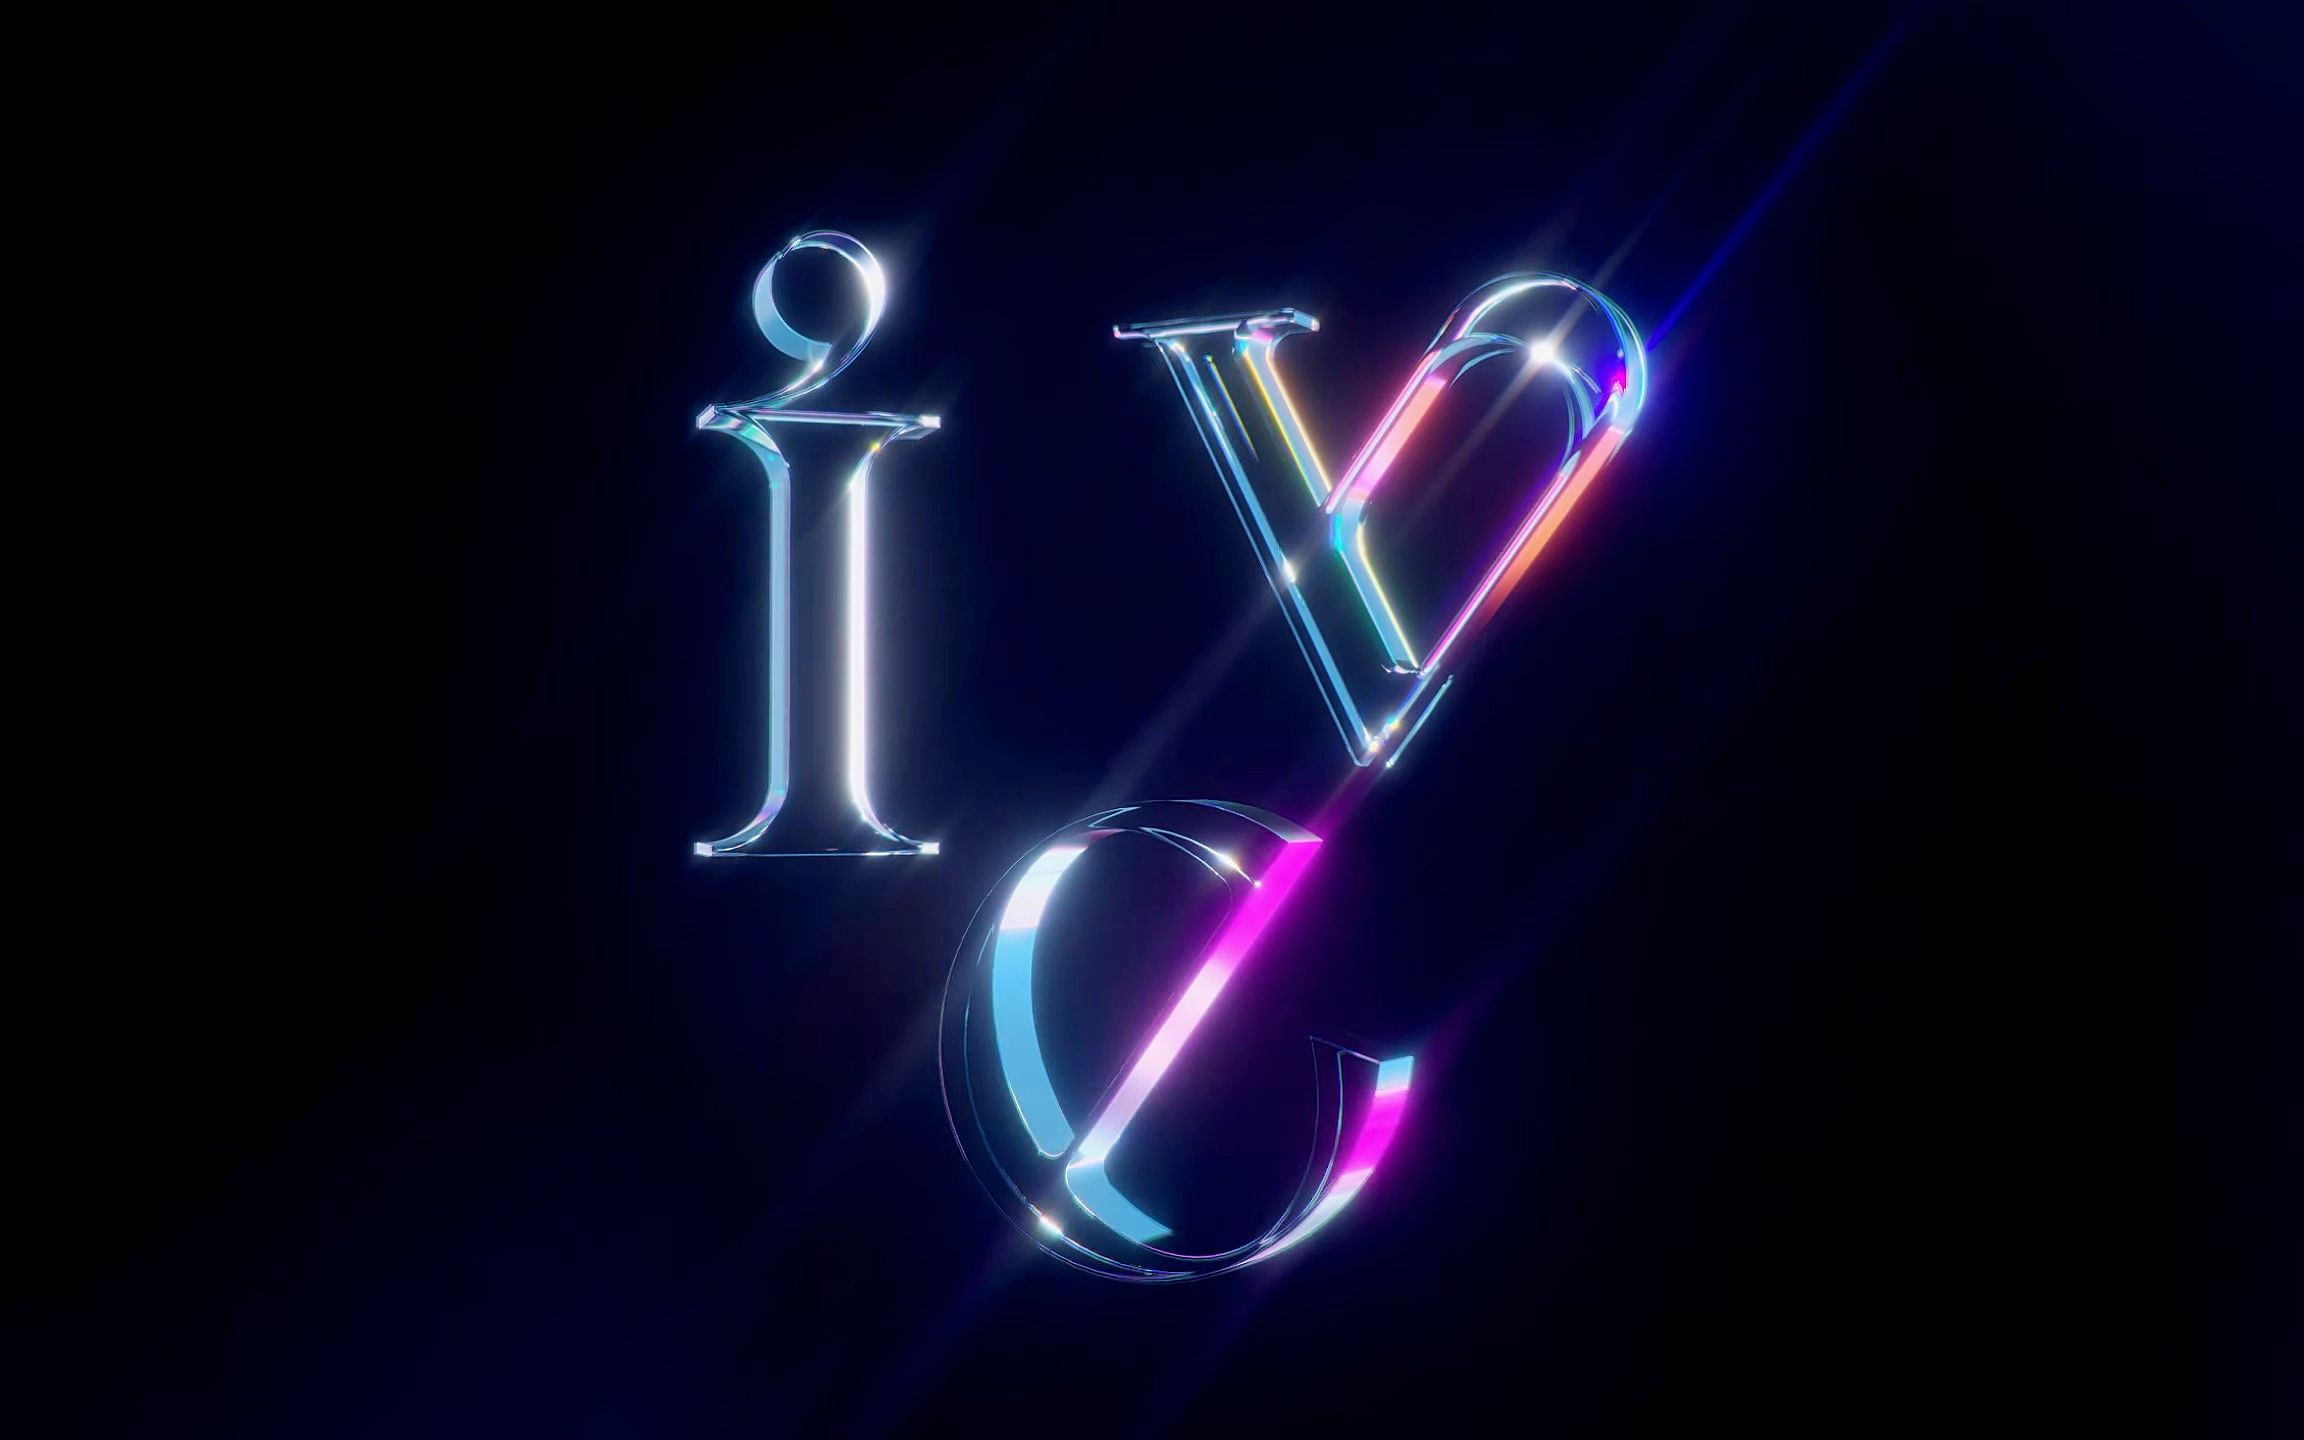 星船新女团 ive 官方logo公开